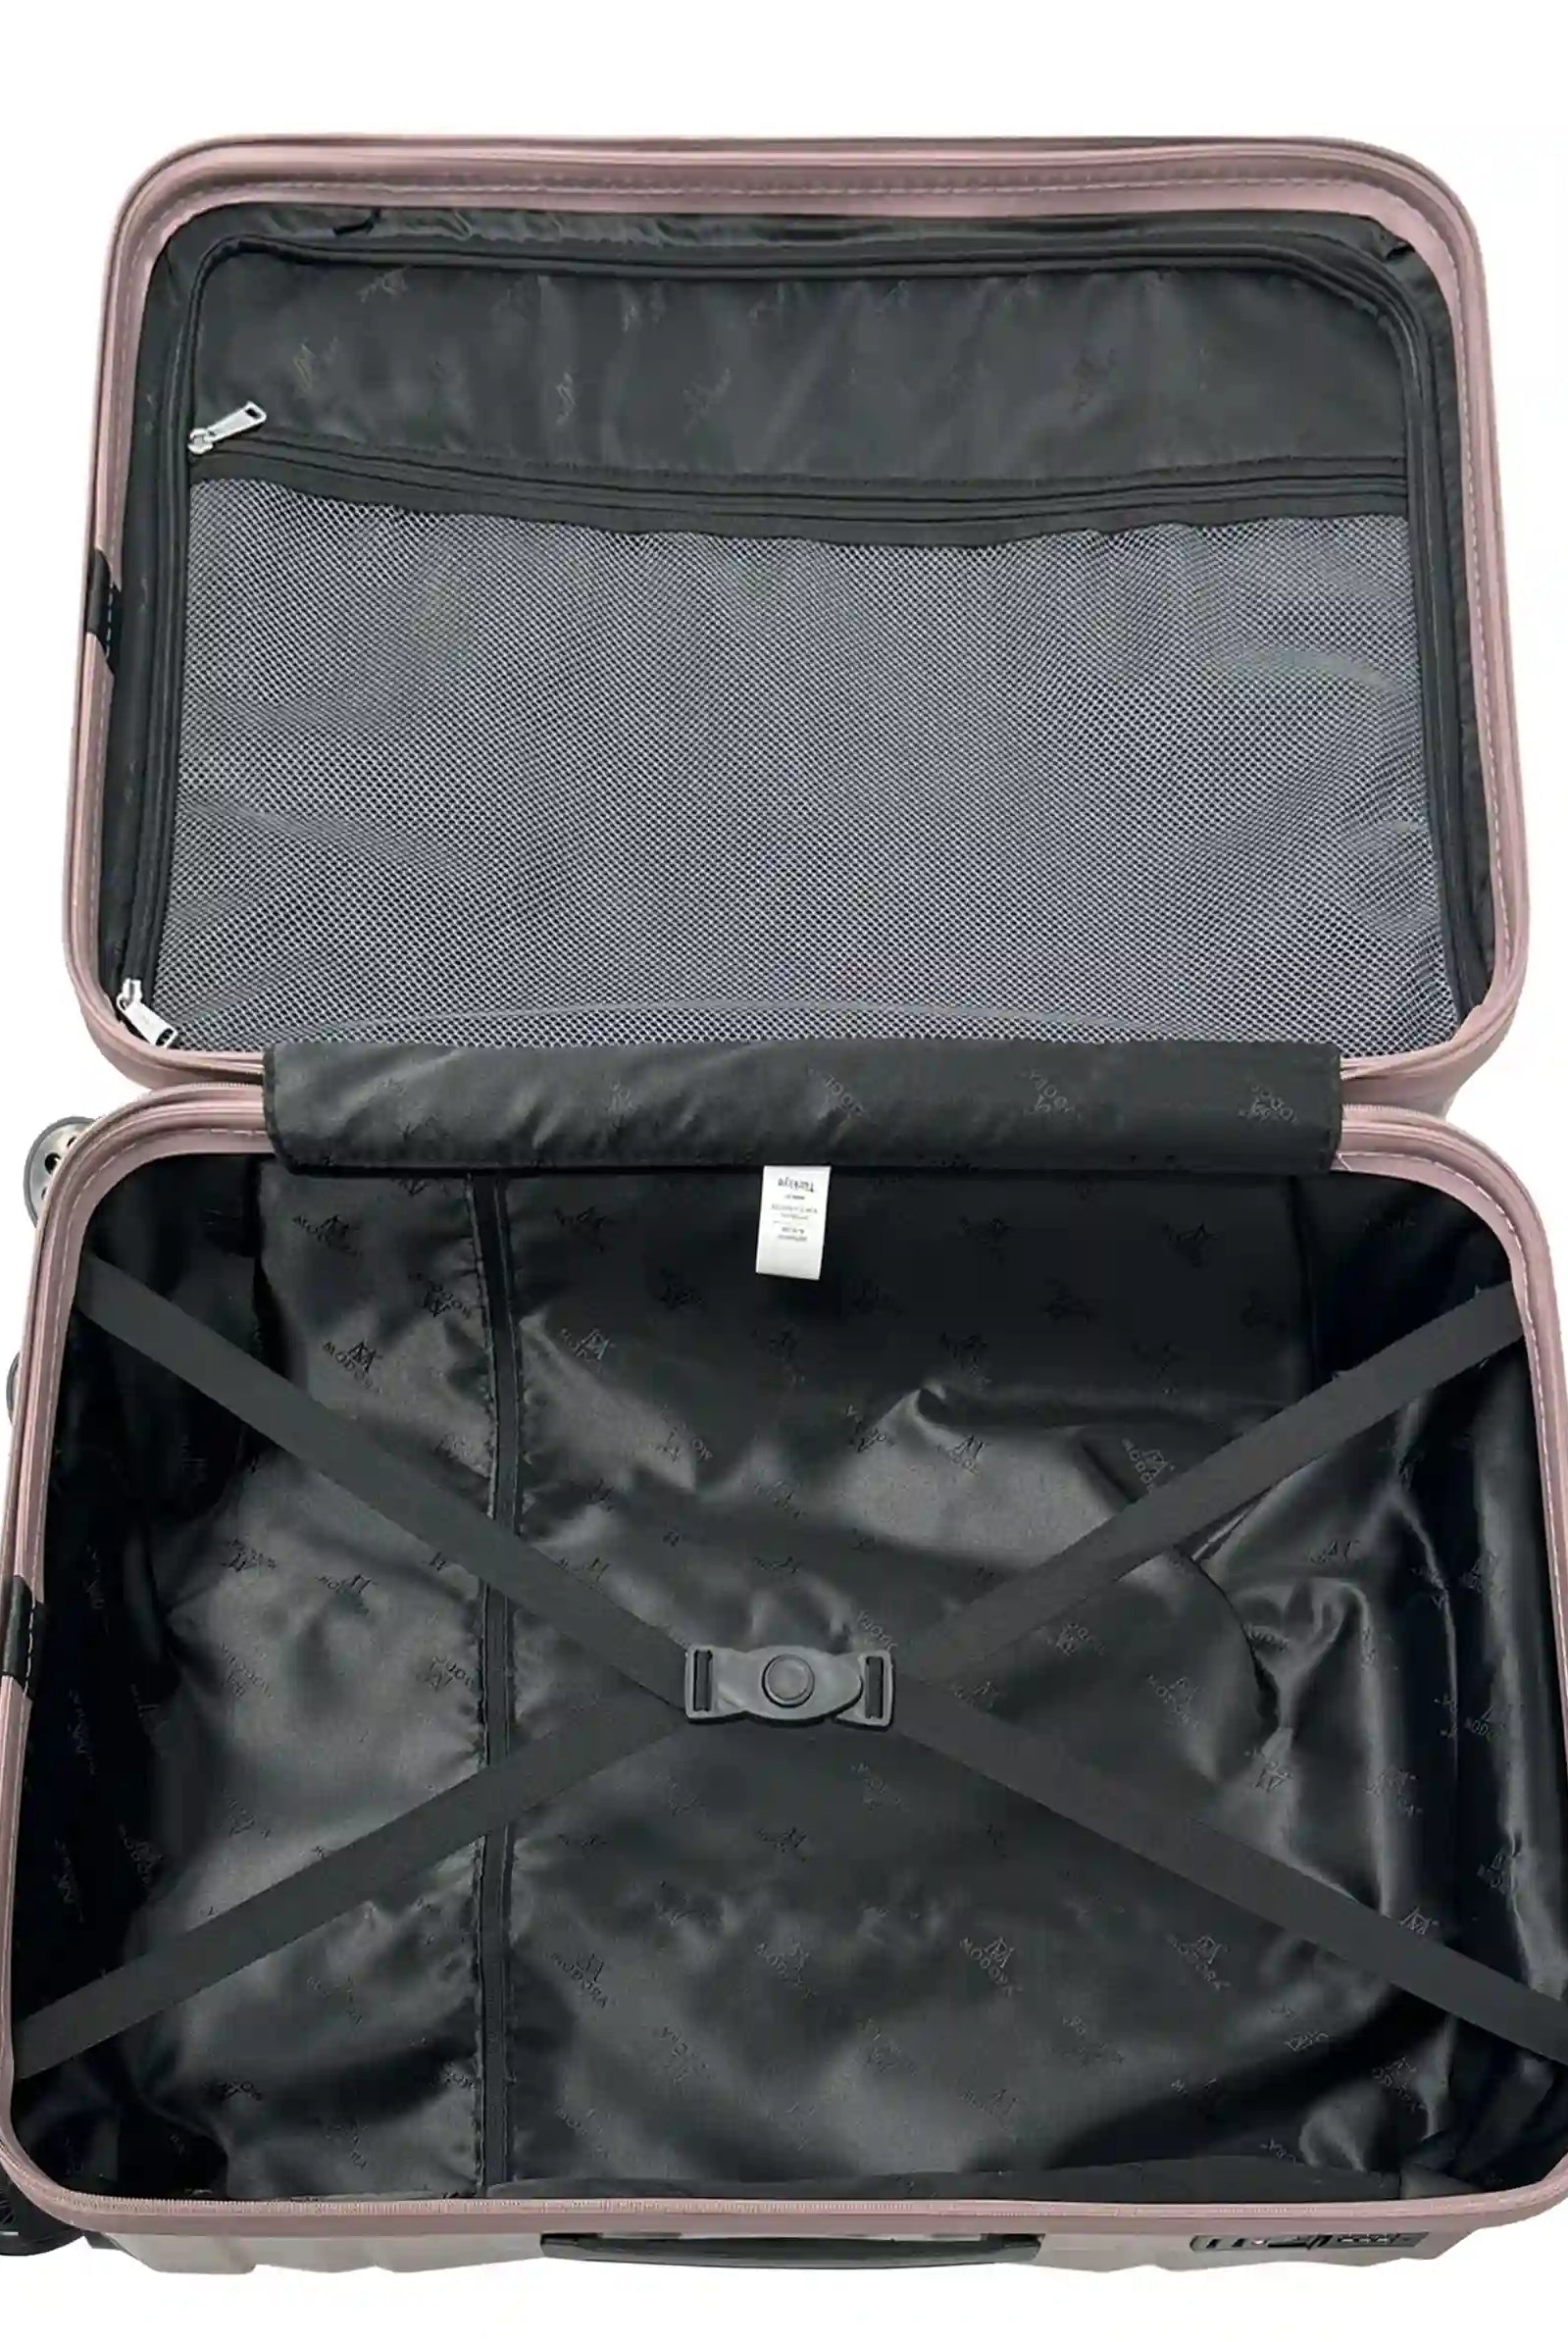 powder large suitcase uk